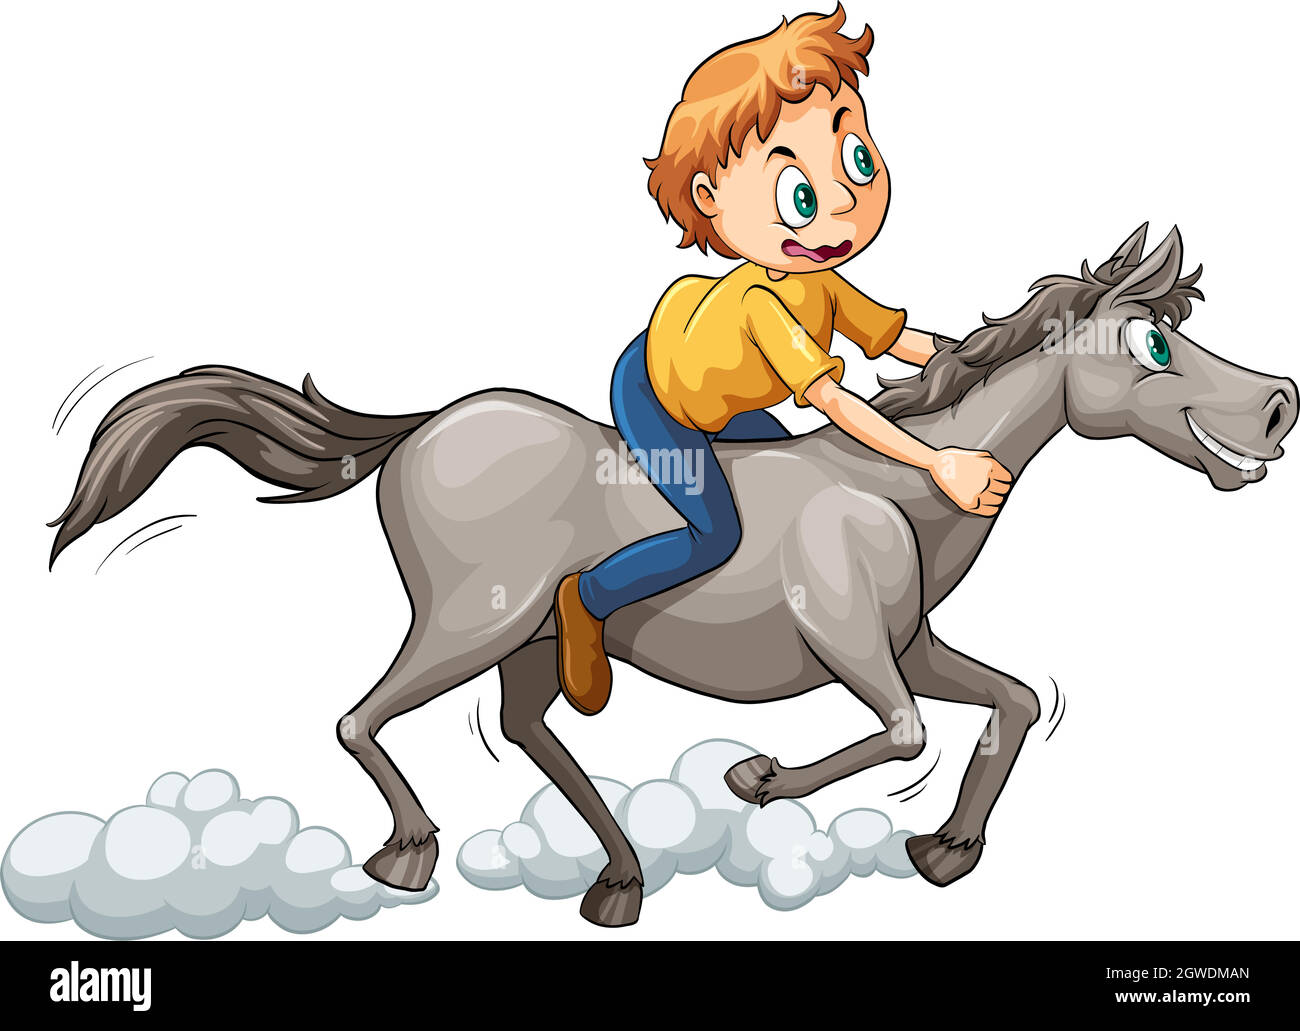 A boy riding a horse Stock Vector